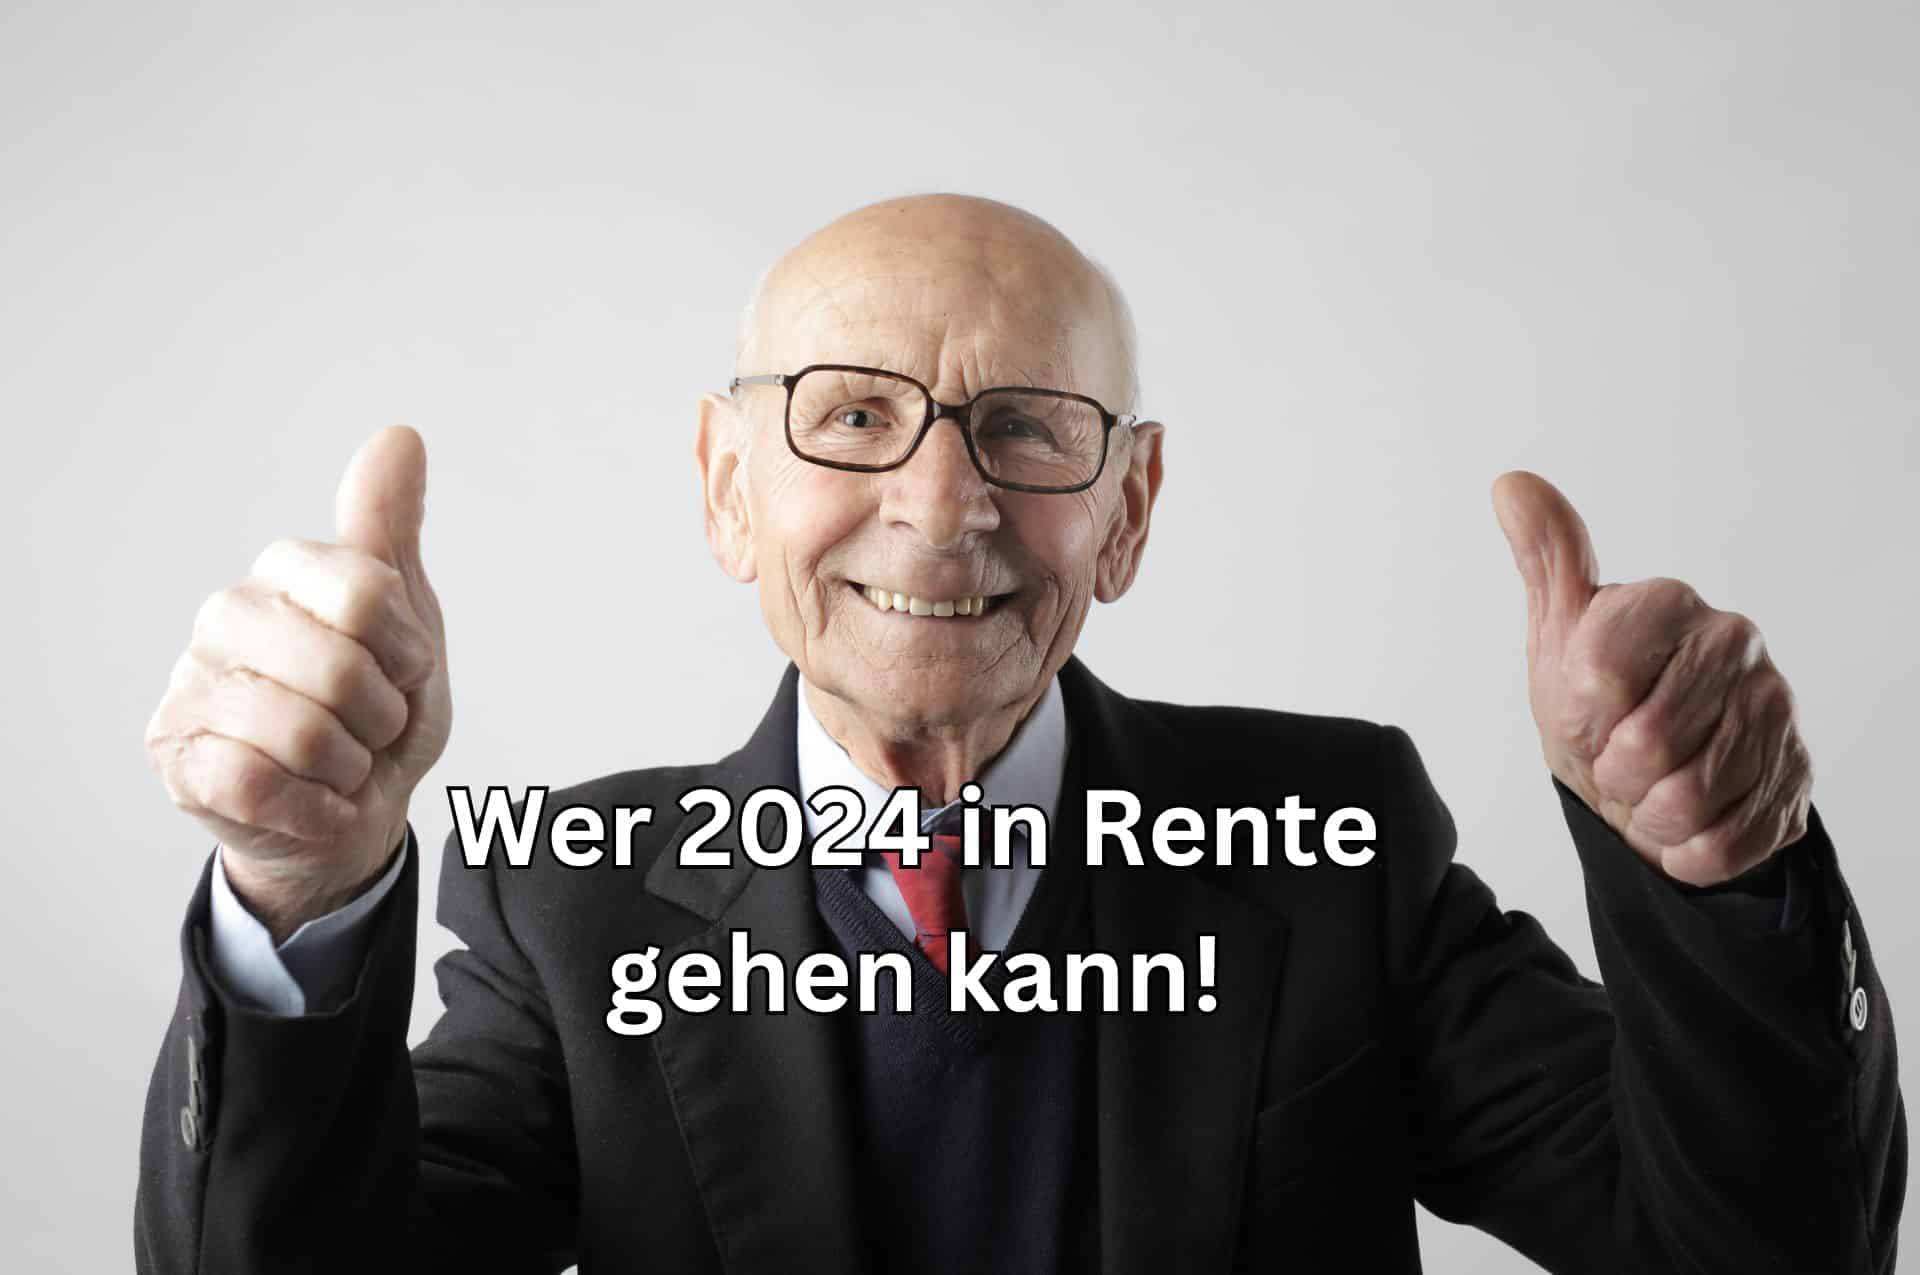 Wer kann im Jahr 2024 in Rente gehen?